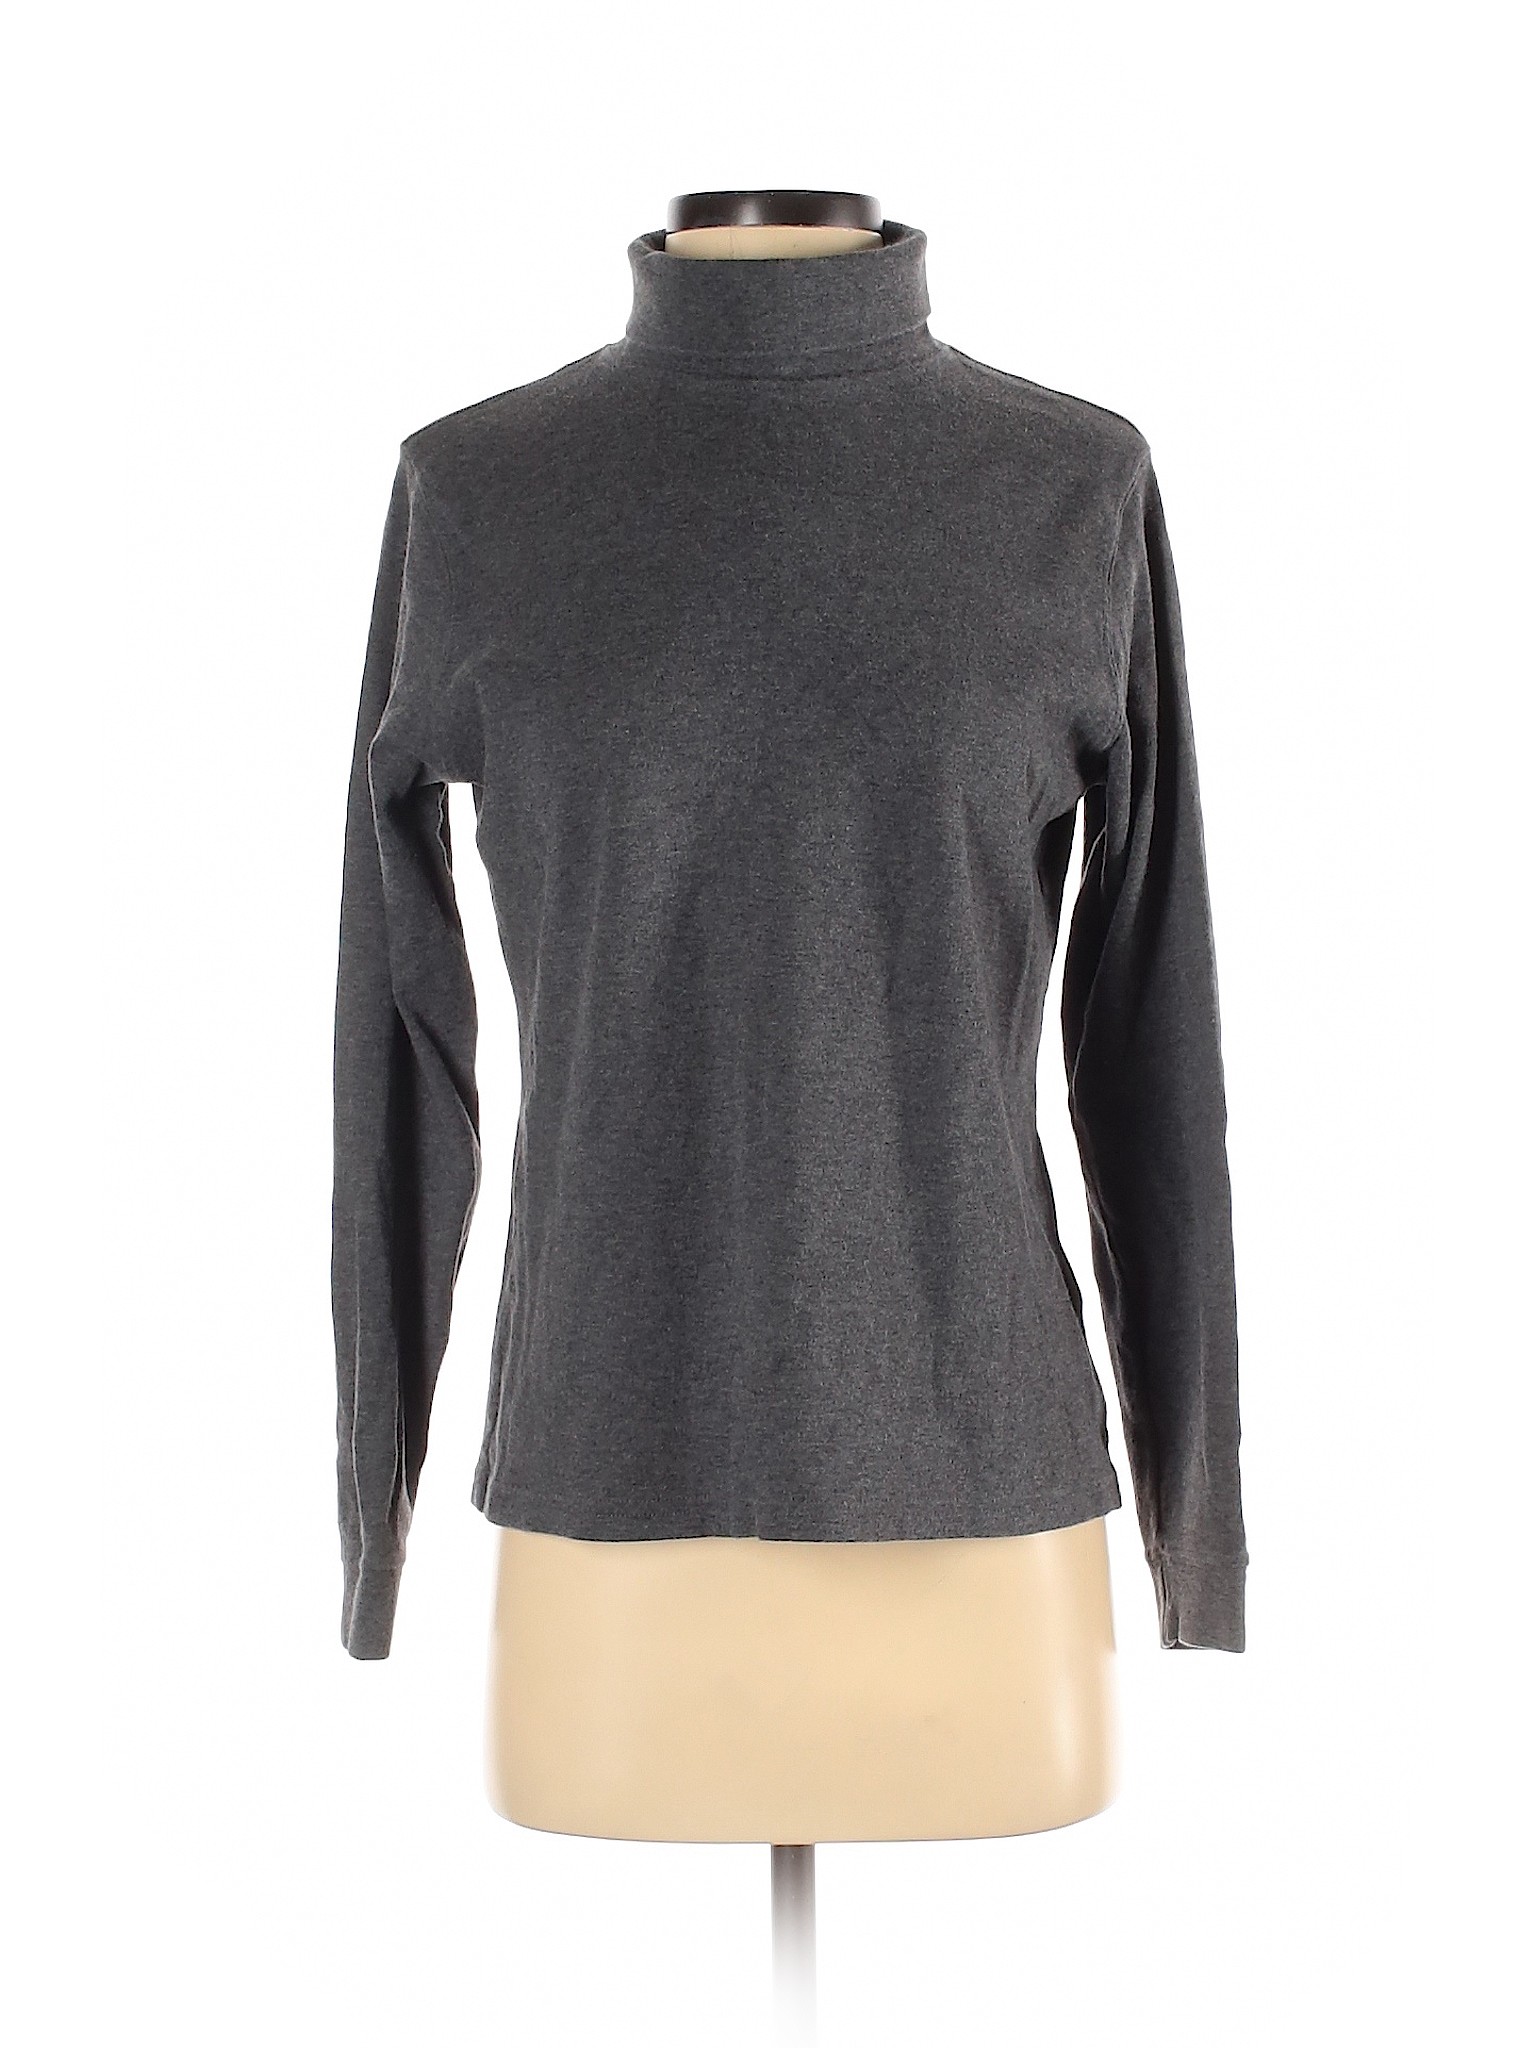 L.L.Bean Women Gray Long Sleeve Turtleneck S | eBay